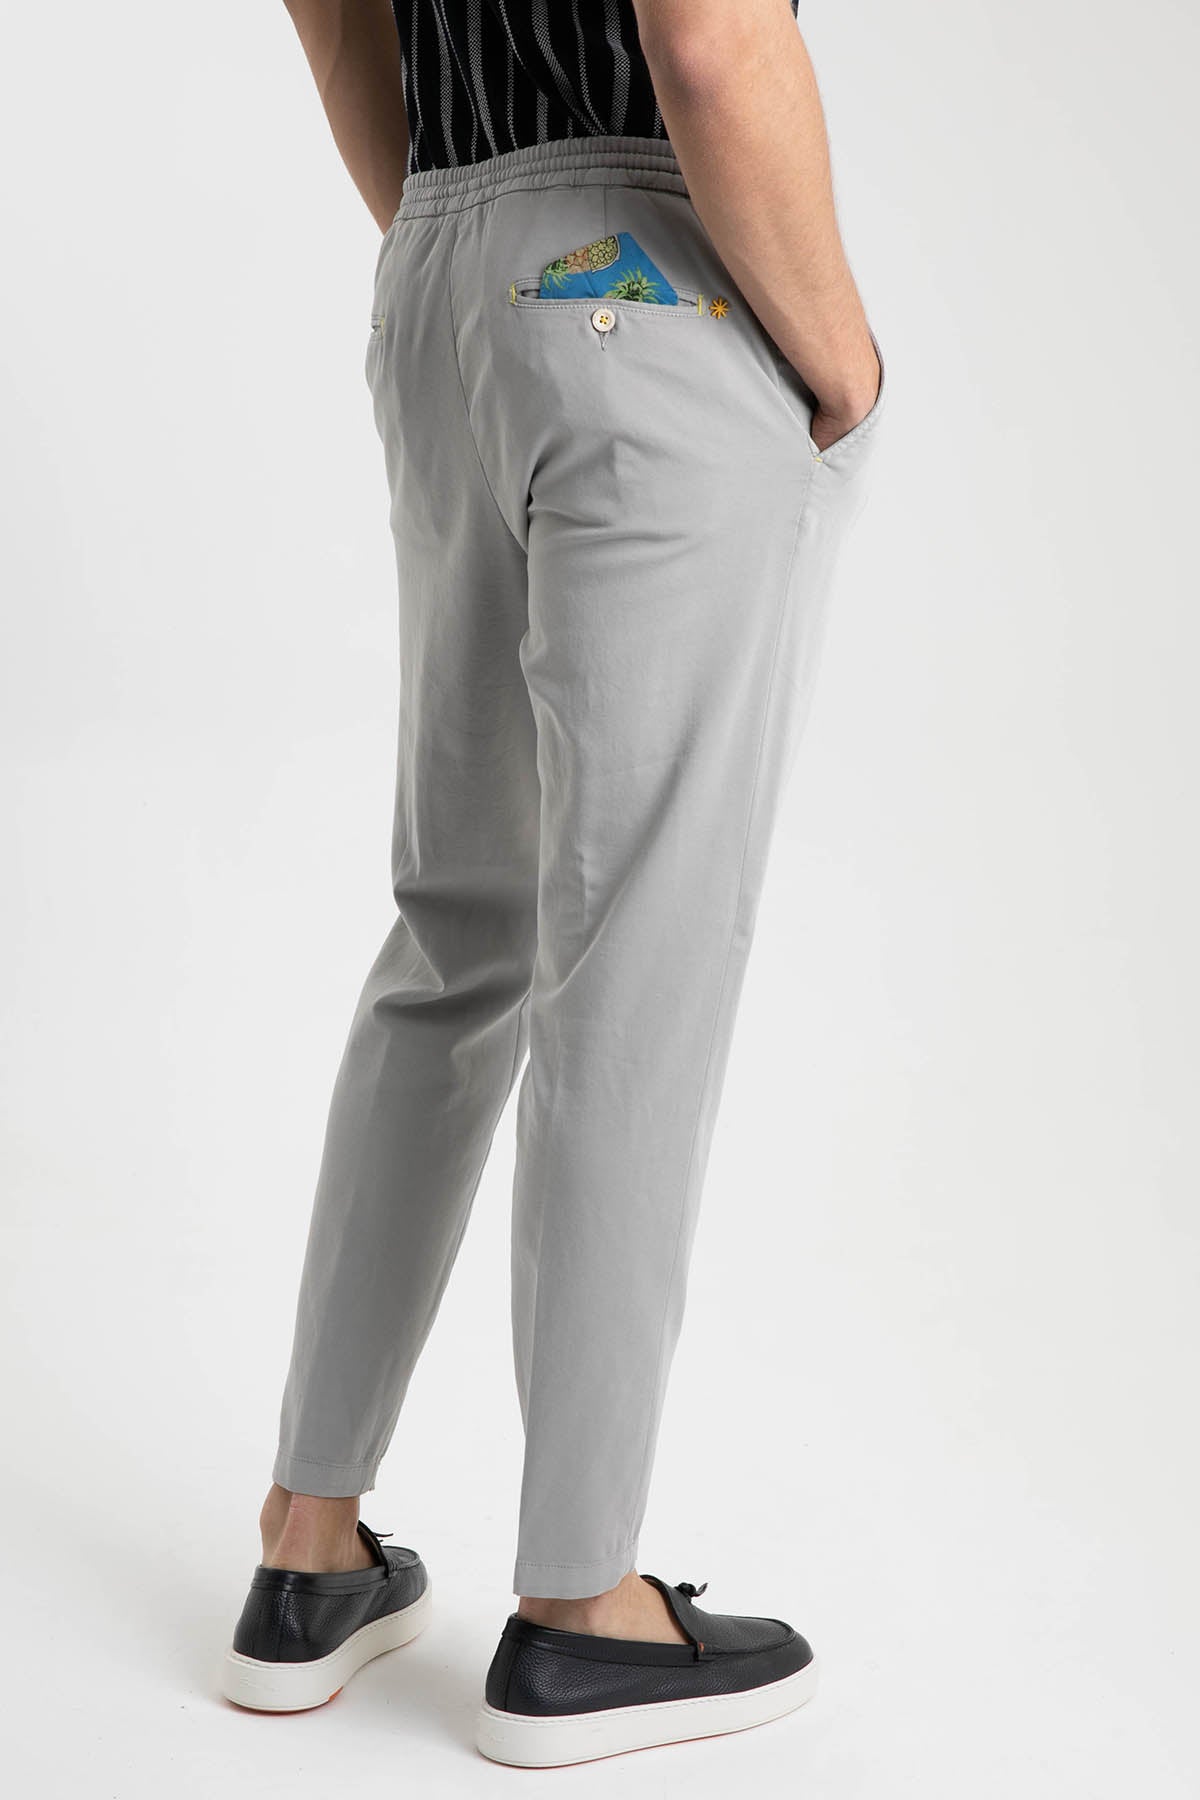 Manuel Ritz Yandan Cepli Beli Lastikli Pantolon-Libas Trendy Fashion Store